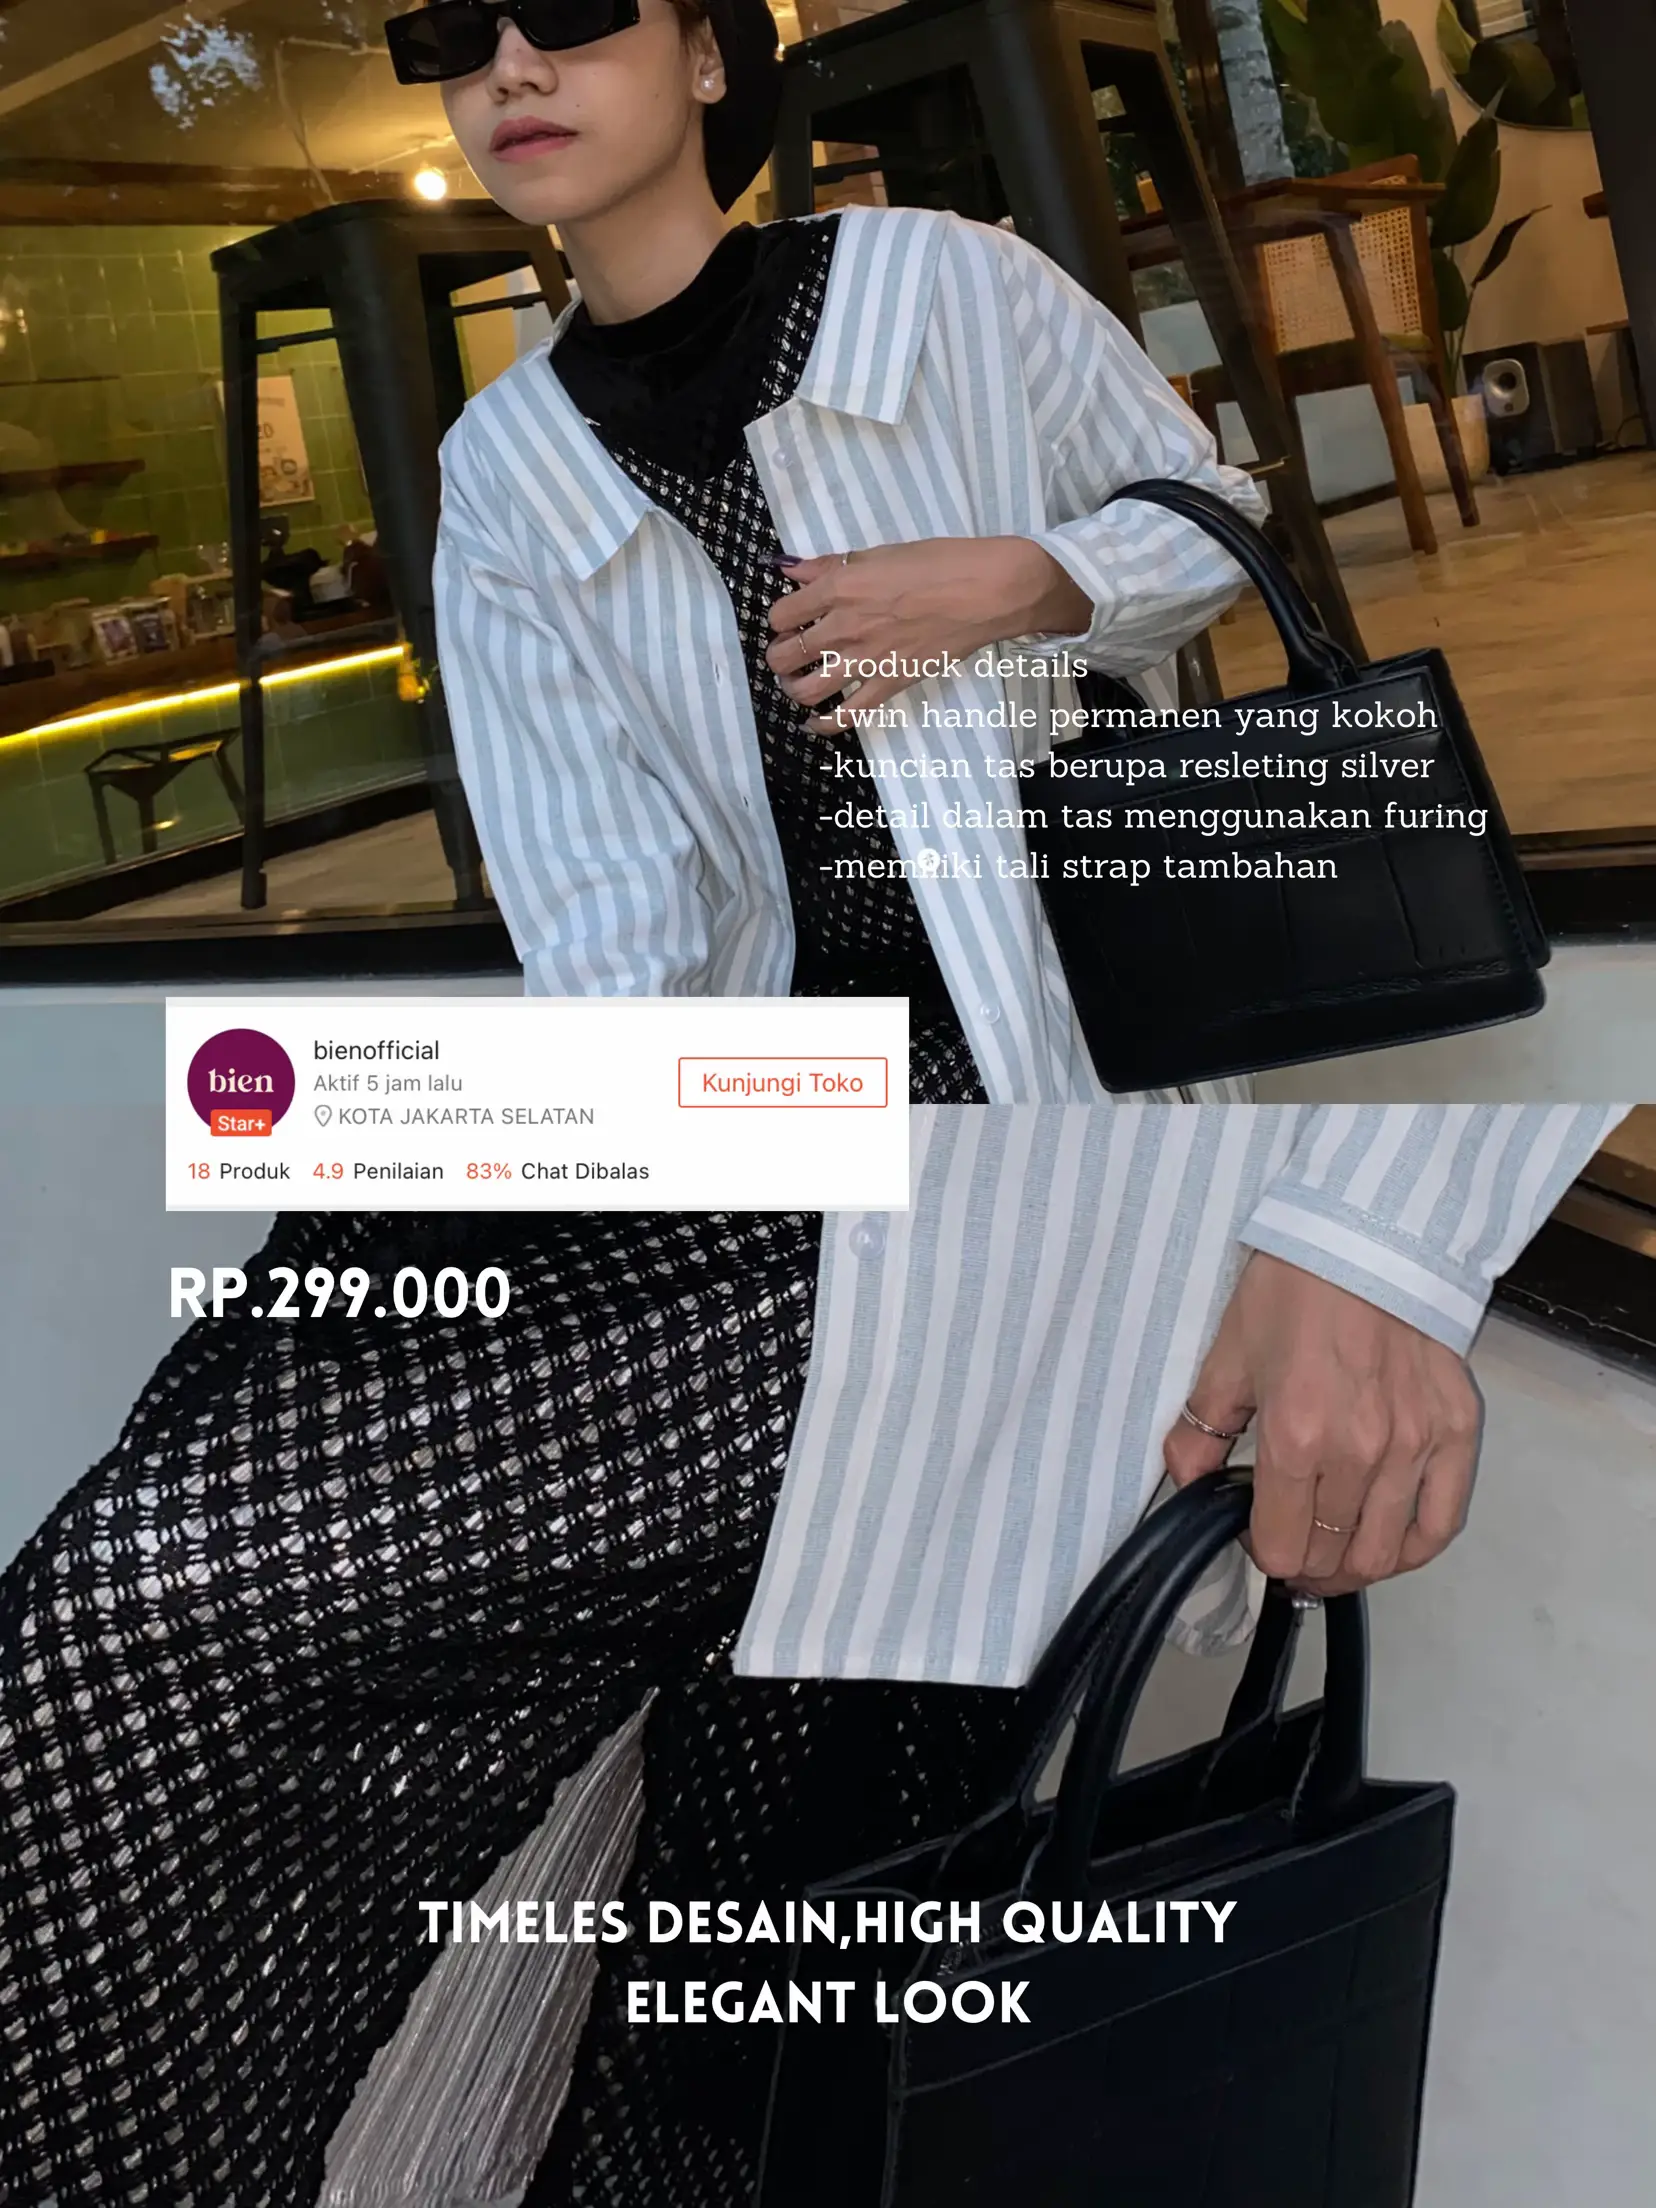 Jual Unik Louis Vuitton One Handle Flap Bag Murah